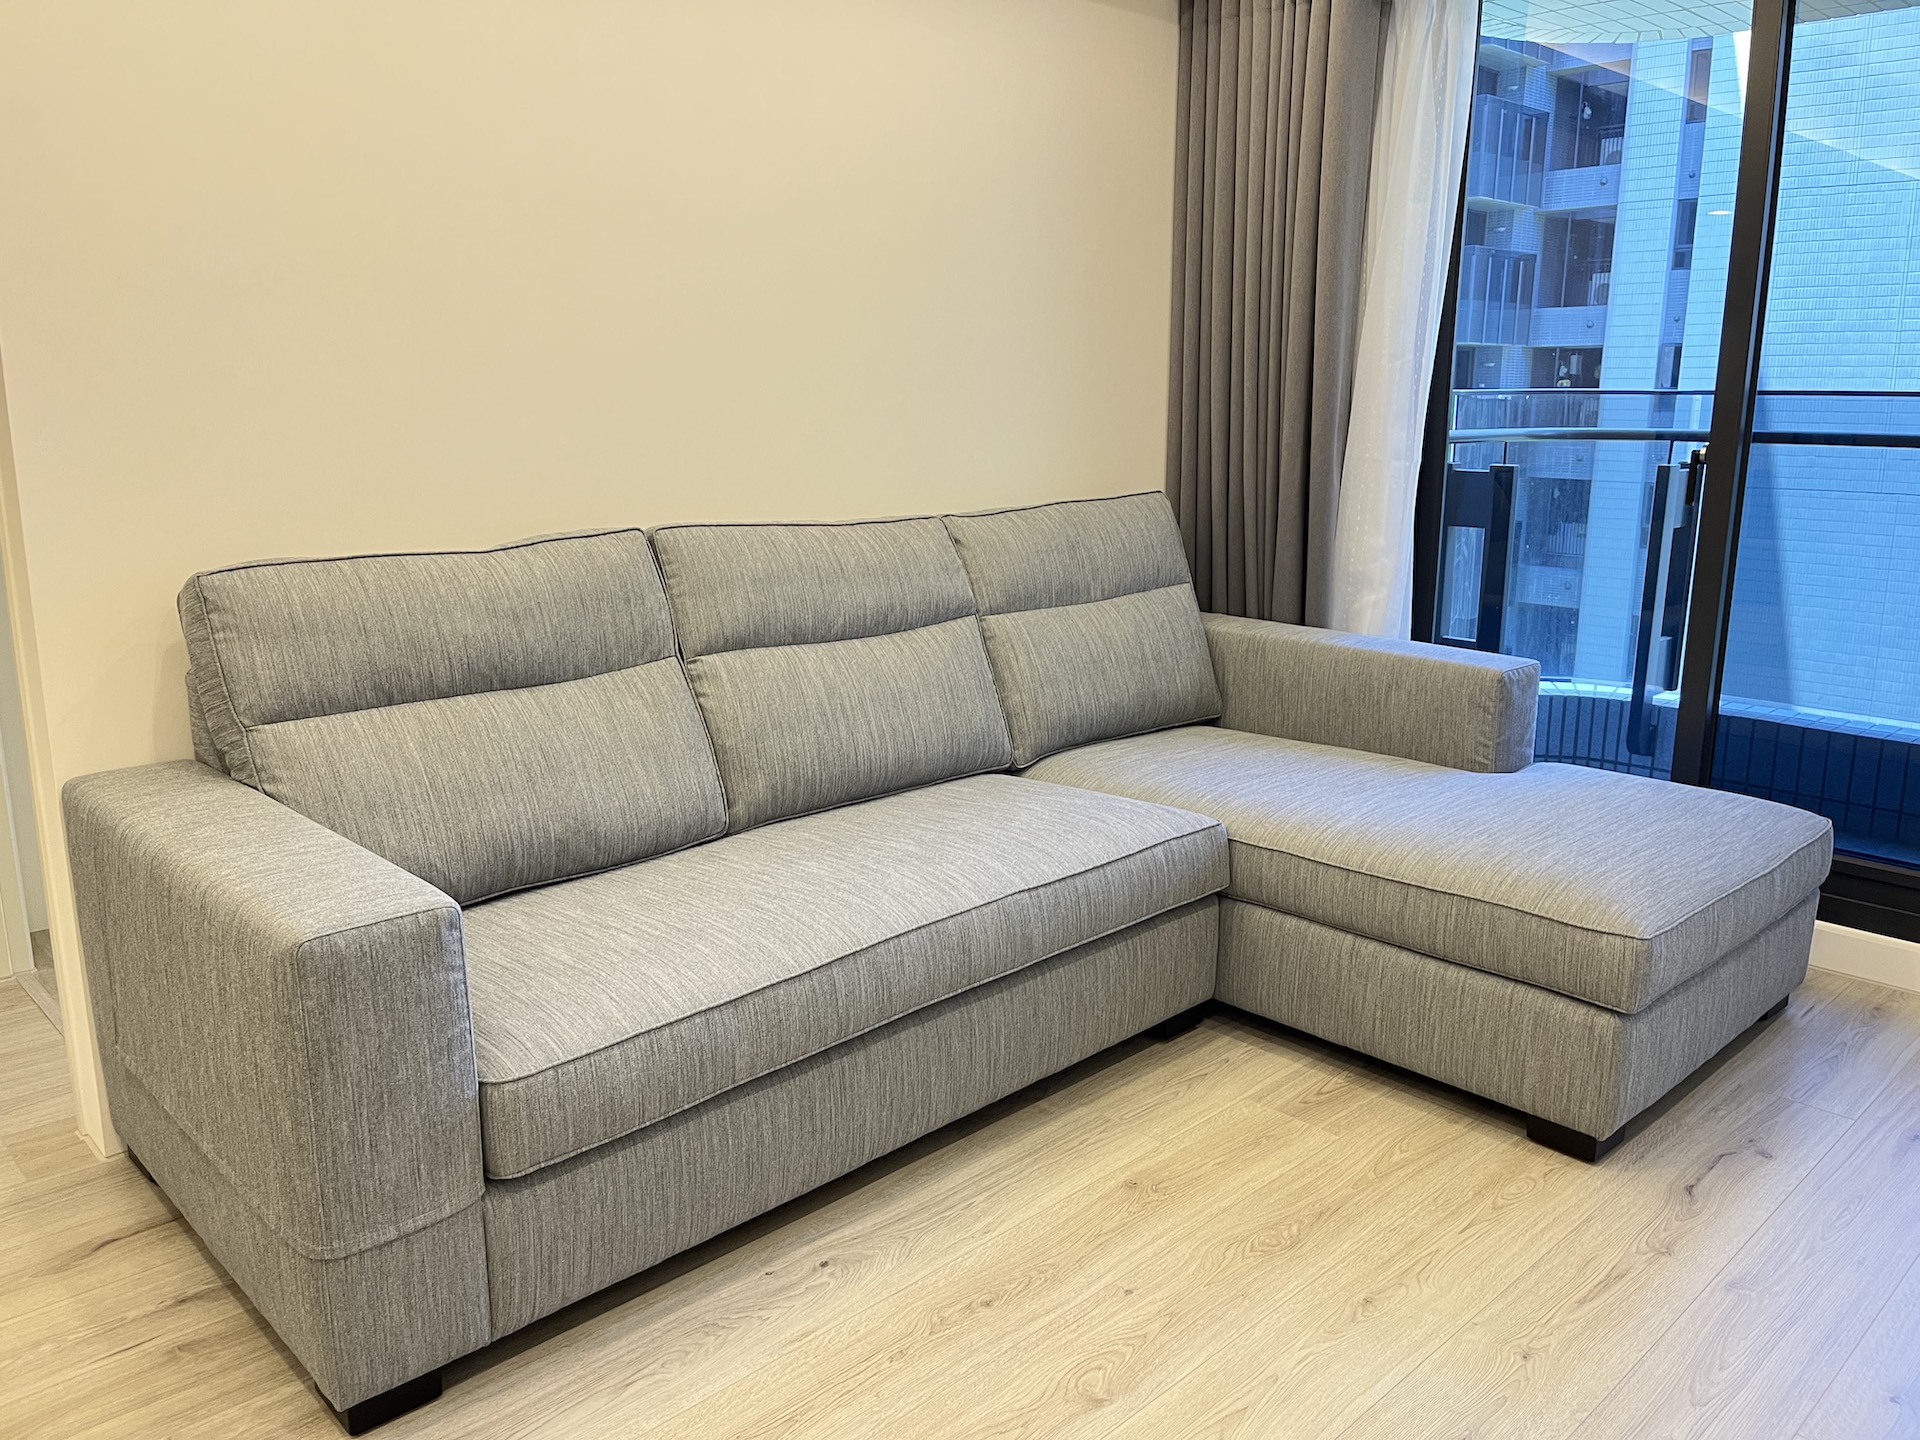 【客戶案例分享】台中太平L型沙發訂製